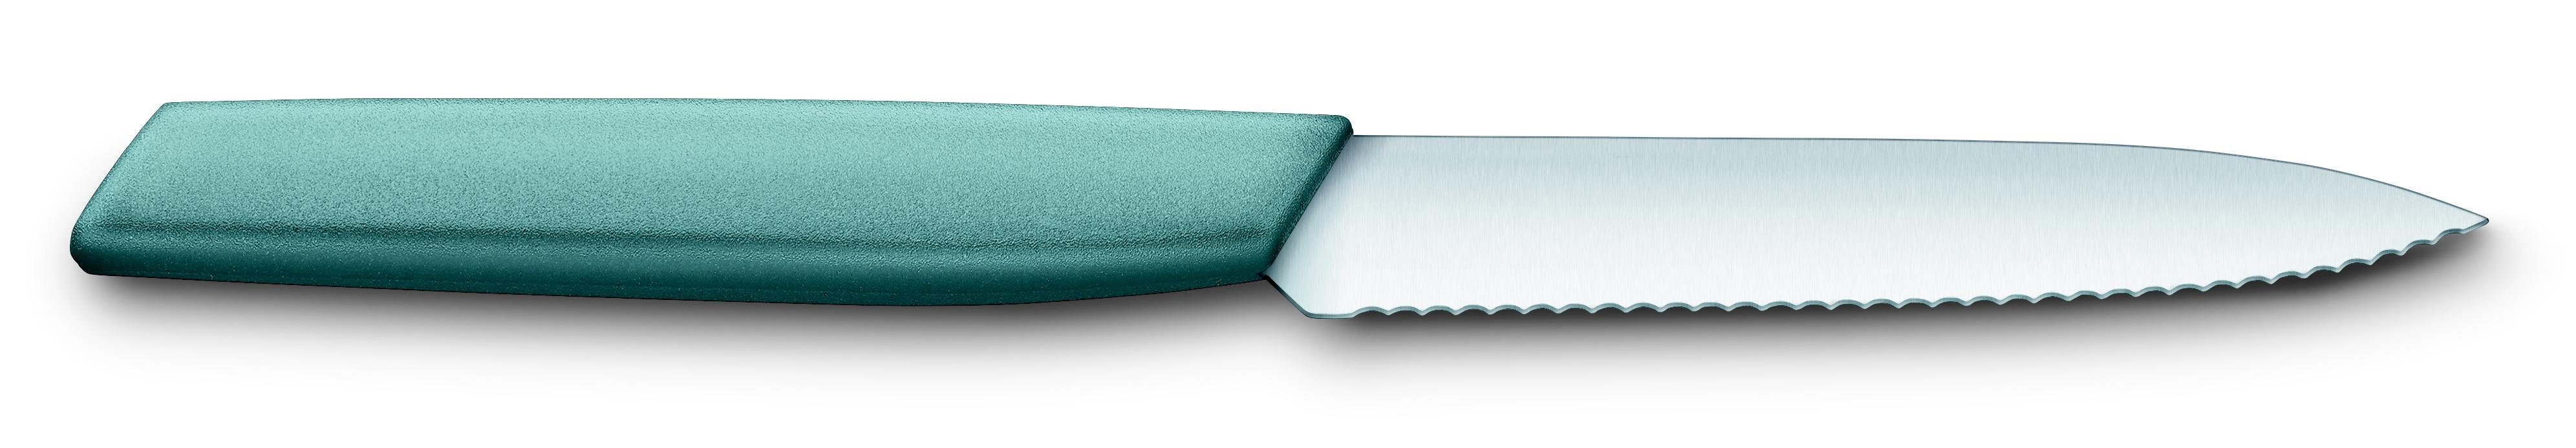 Victorinox Taschenmesser Paring knife, wavy, 10 cm, arona